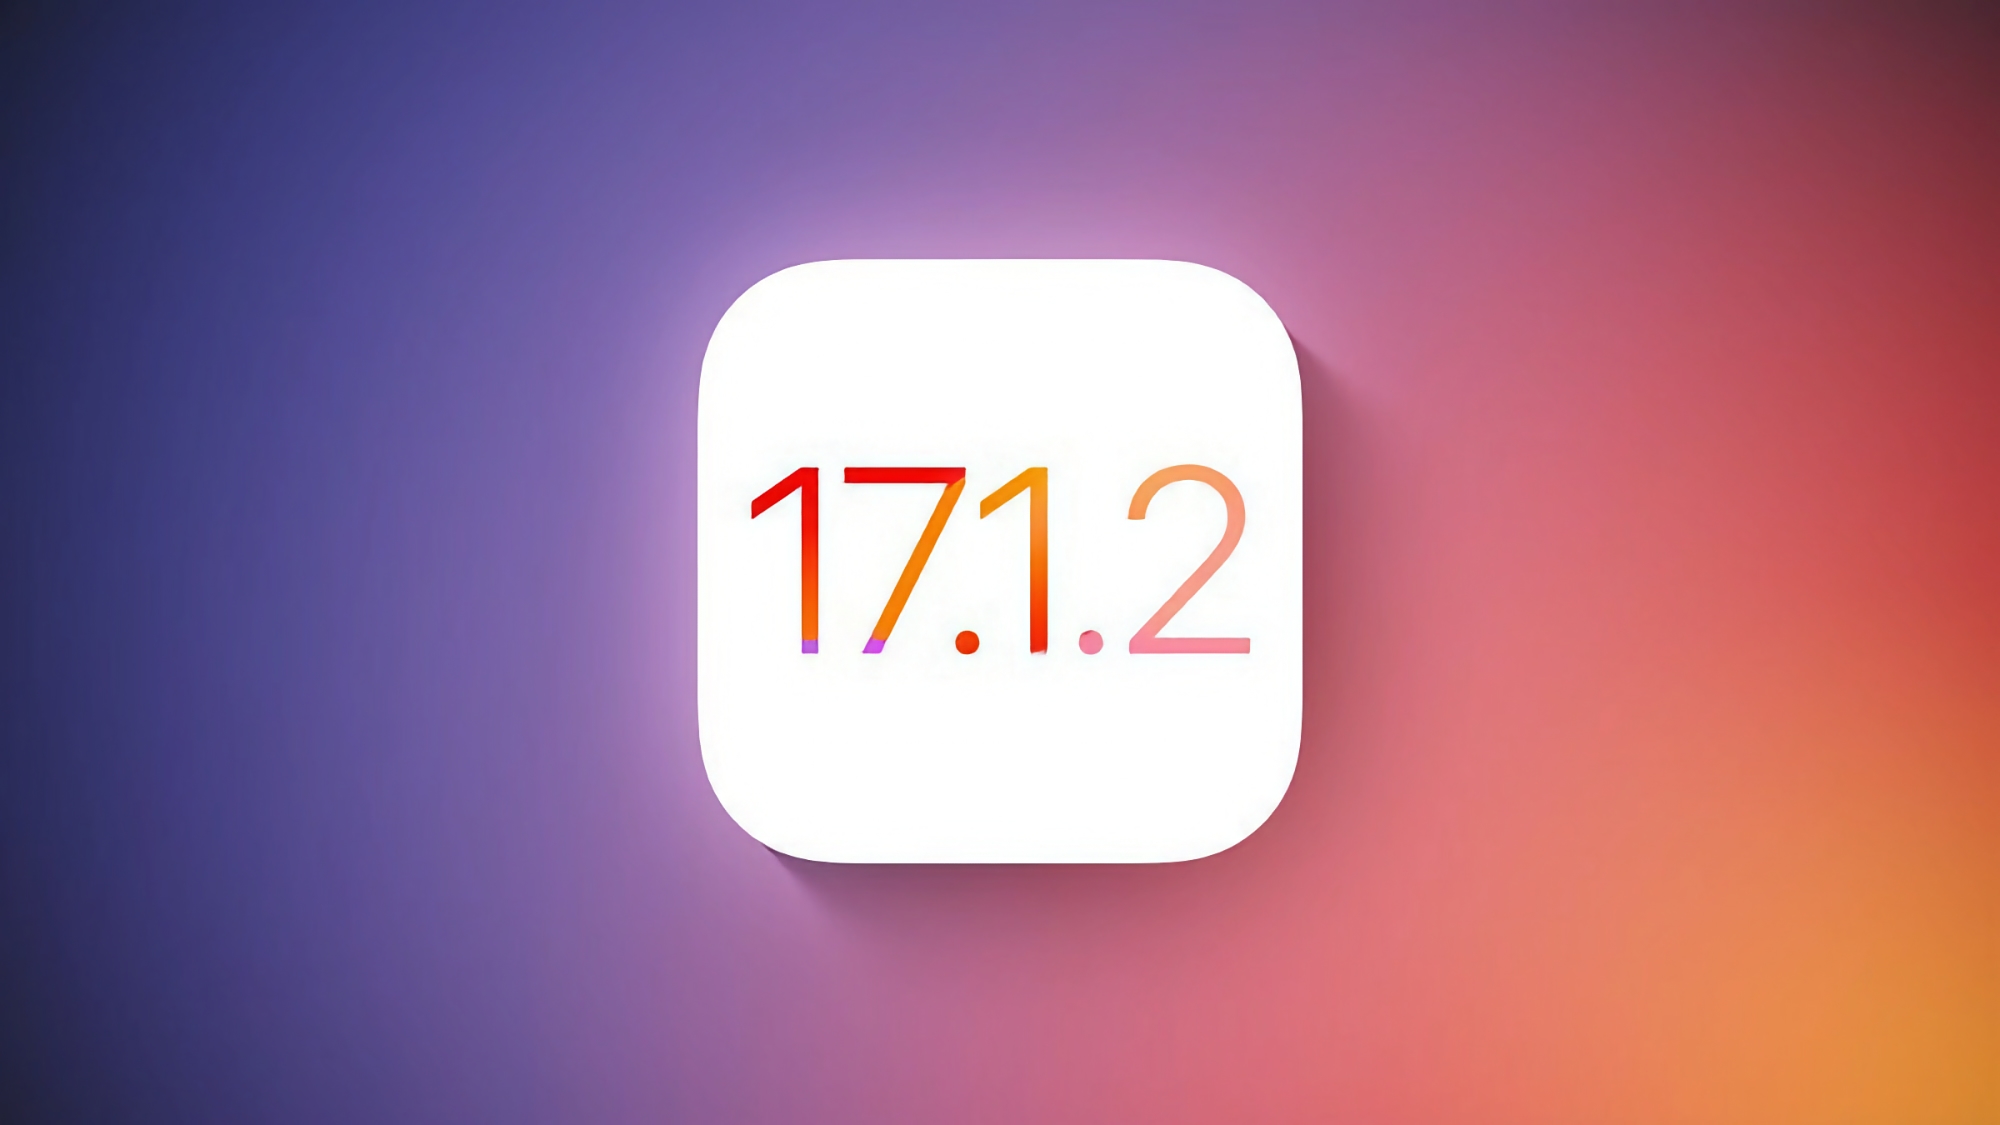 Apple frigiver iOS 17.1.2-opdatering til iPhone-brugere i denne uge